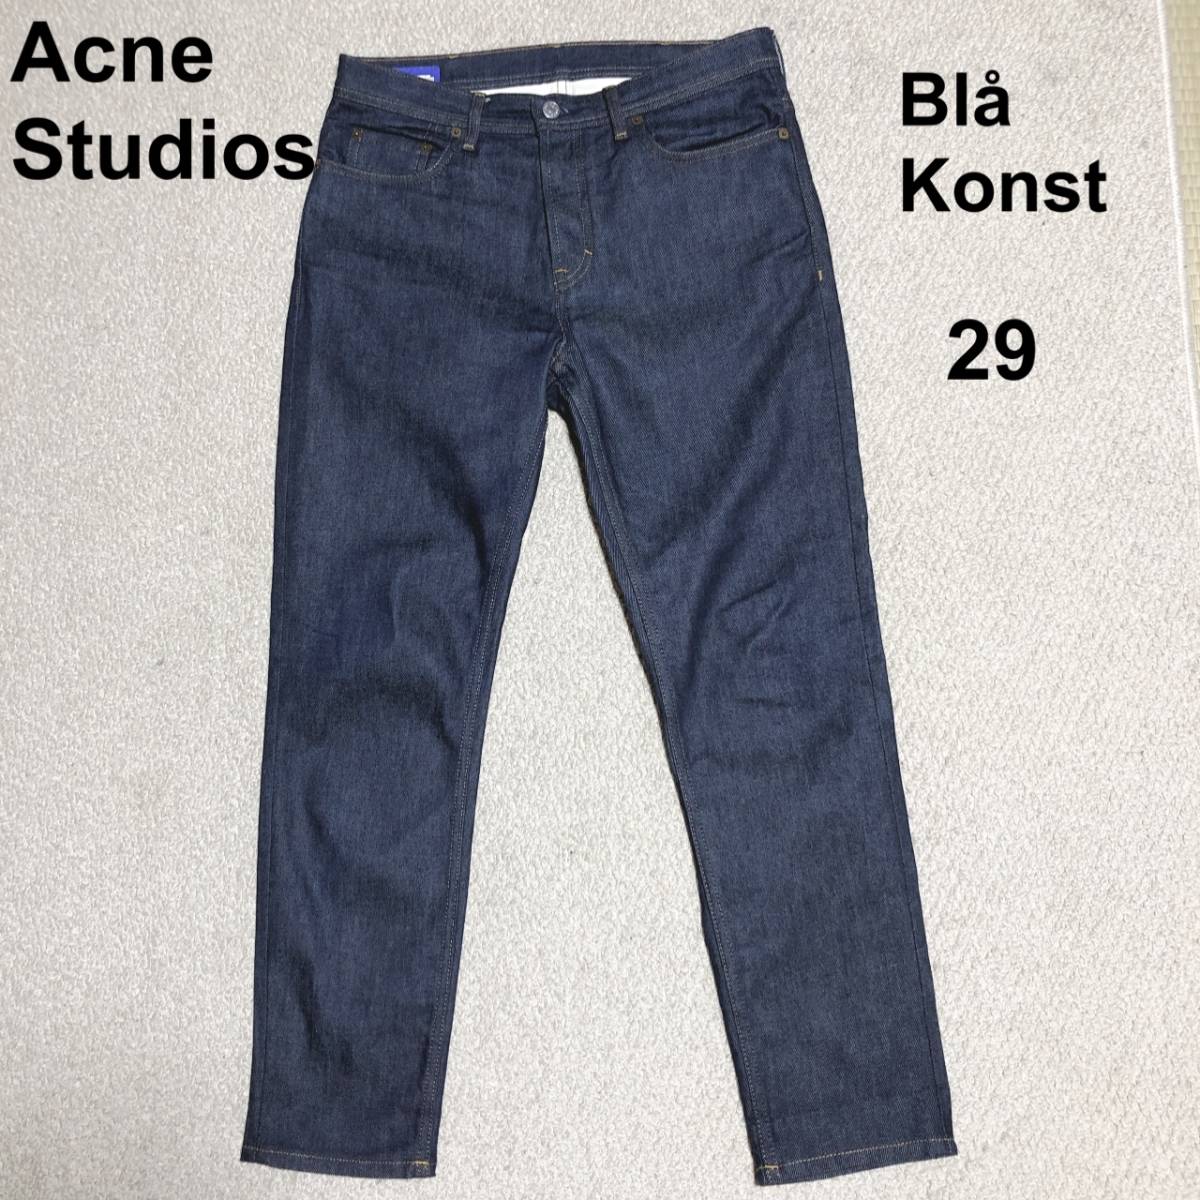 ACNE STUDIOS Denim pants 29/ Acne s Today oz Bla Konstbro navy blue -stroke rigid made in Italy 